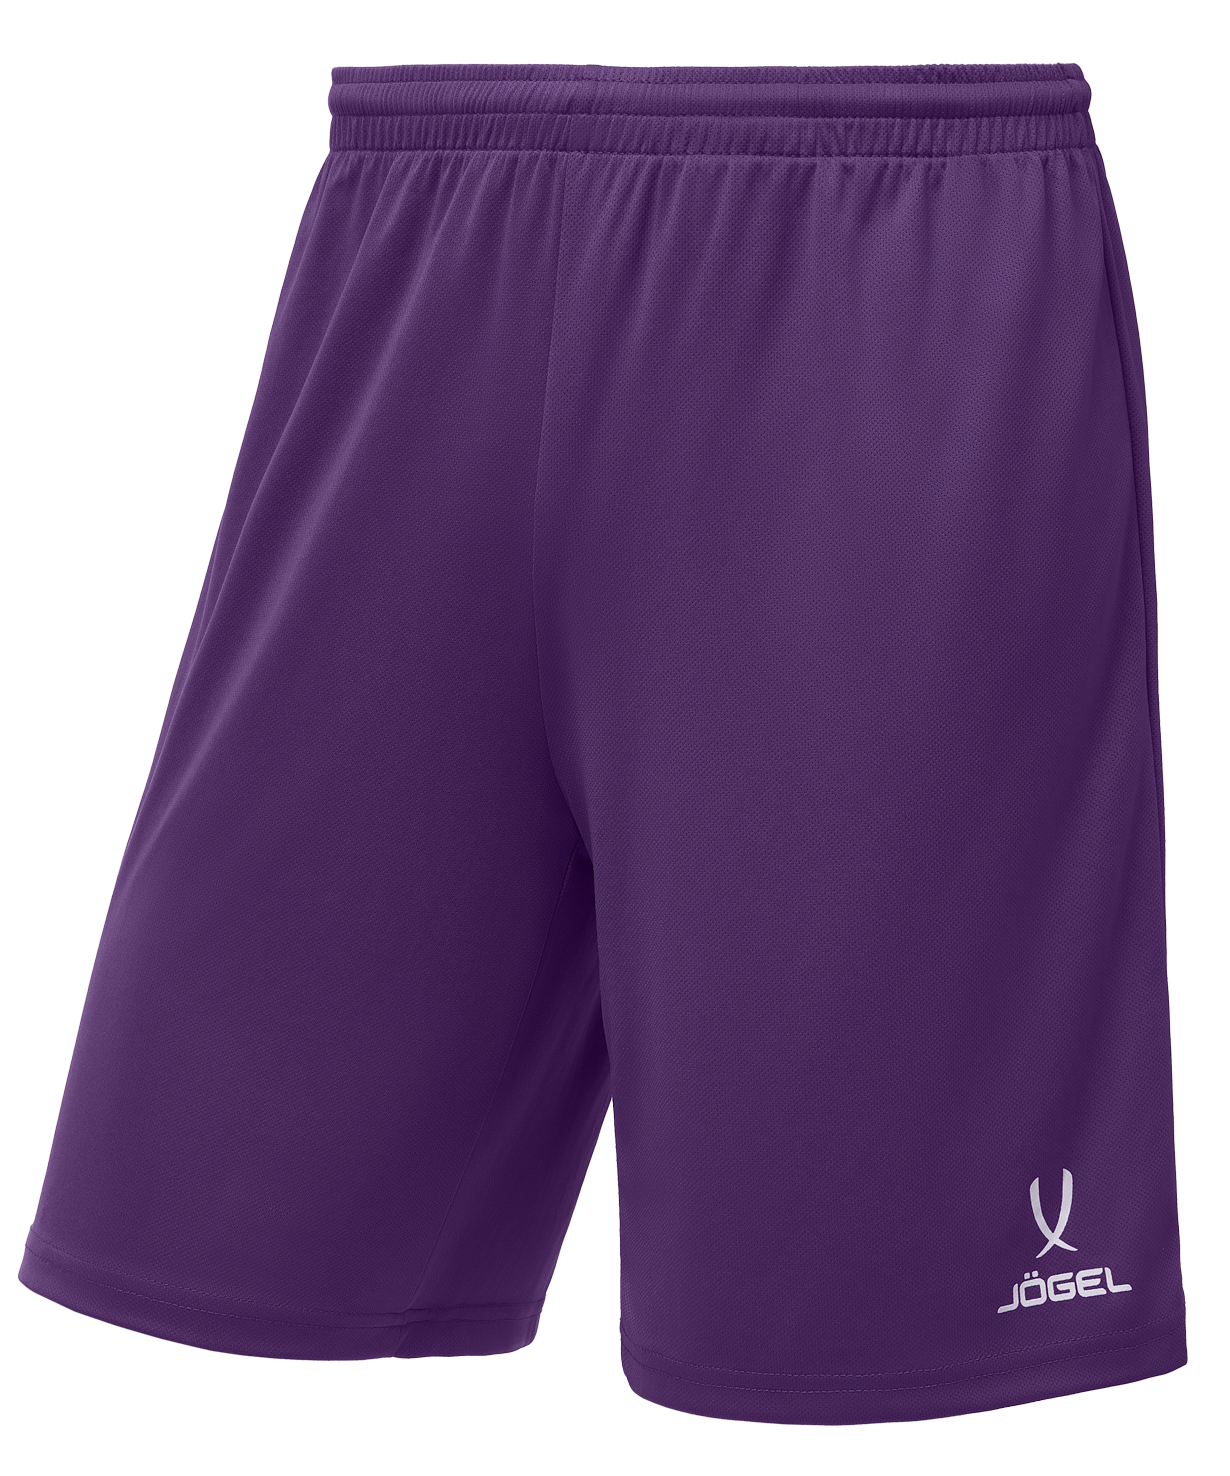 Шорты баскетбольные Jogel Camp Basic, фиолетовый, детский - YL шорты баскетбольные j gel camp basic фиолетовый